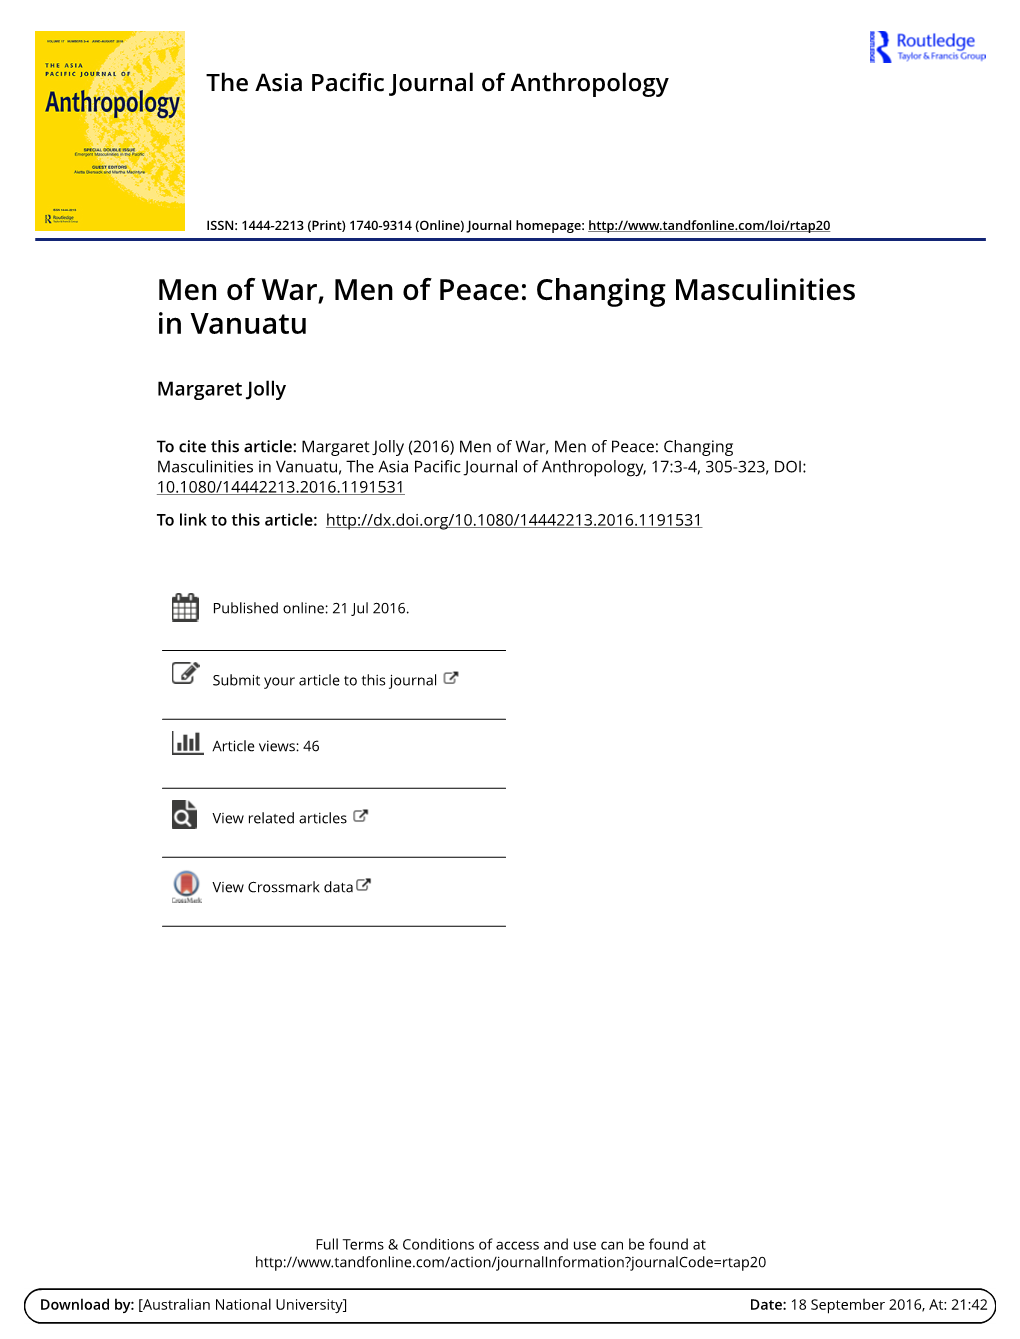 Men of War, Men of Peace: Changing Masculinities in Vanuatu